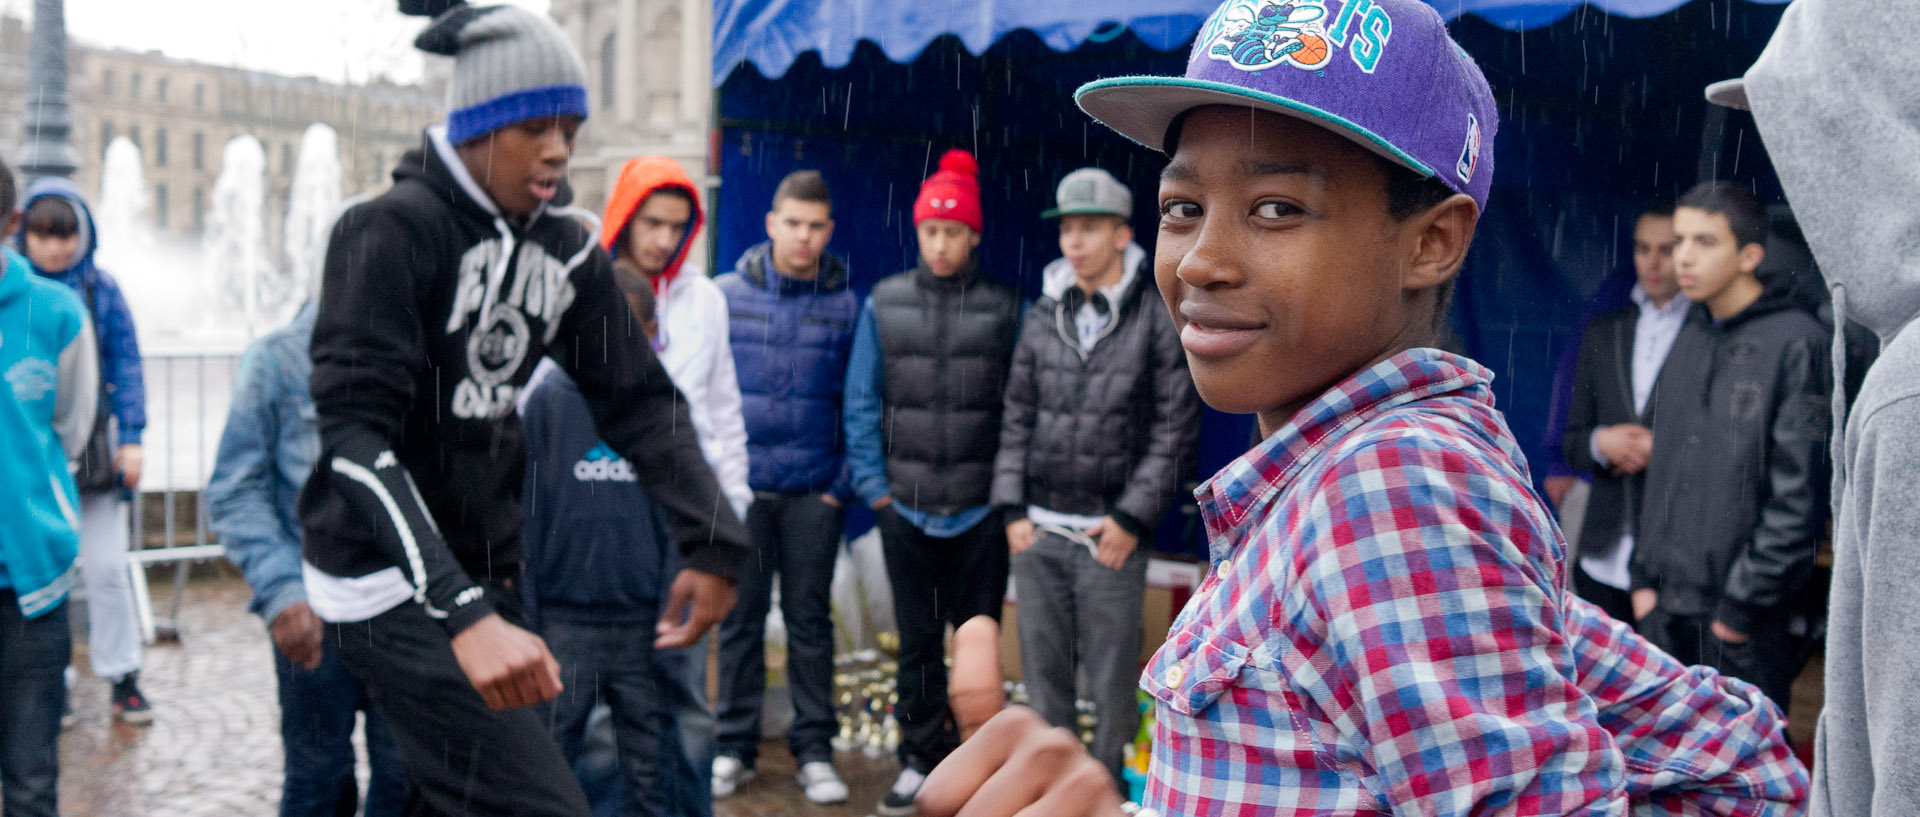 Pouce levé pendant une hip hop battle, place de la République, à Lille.